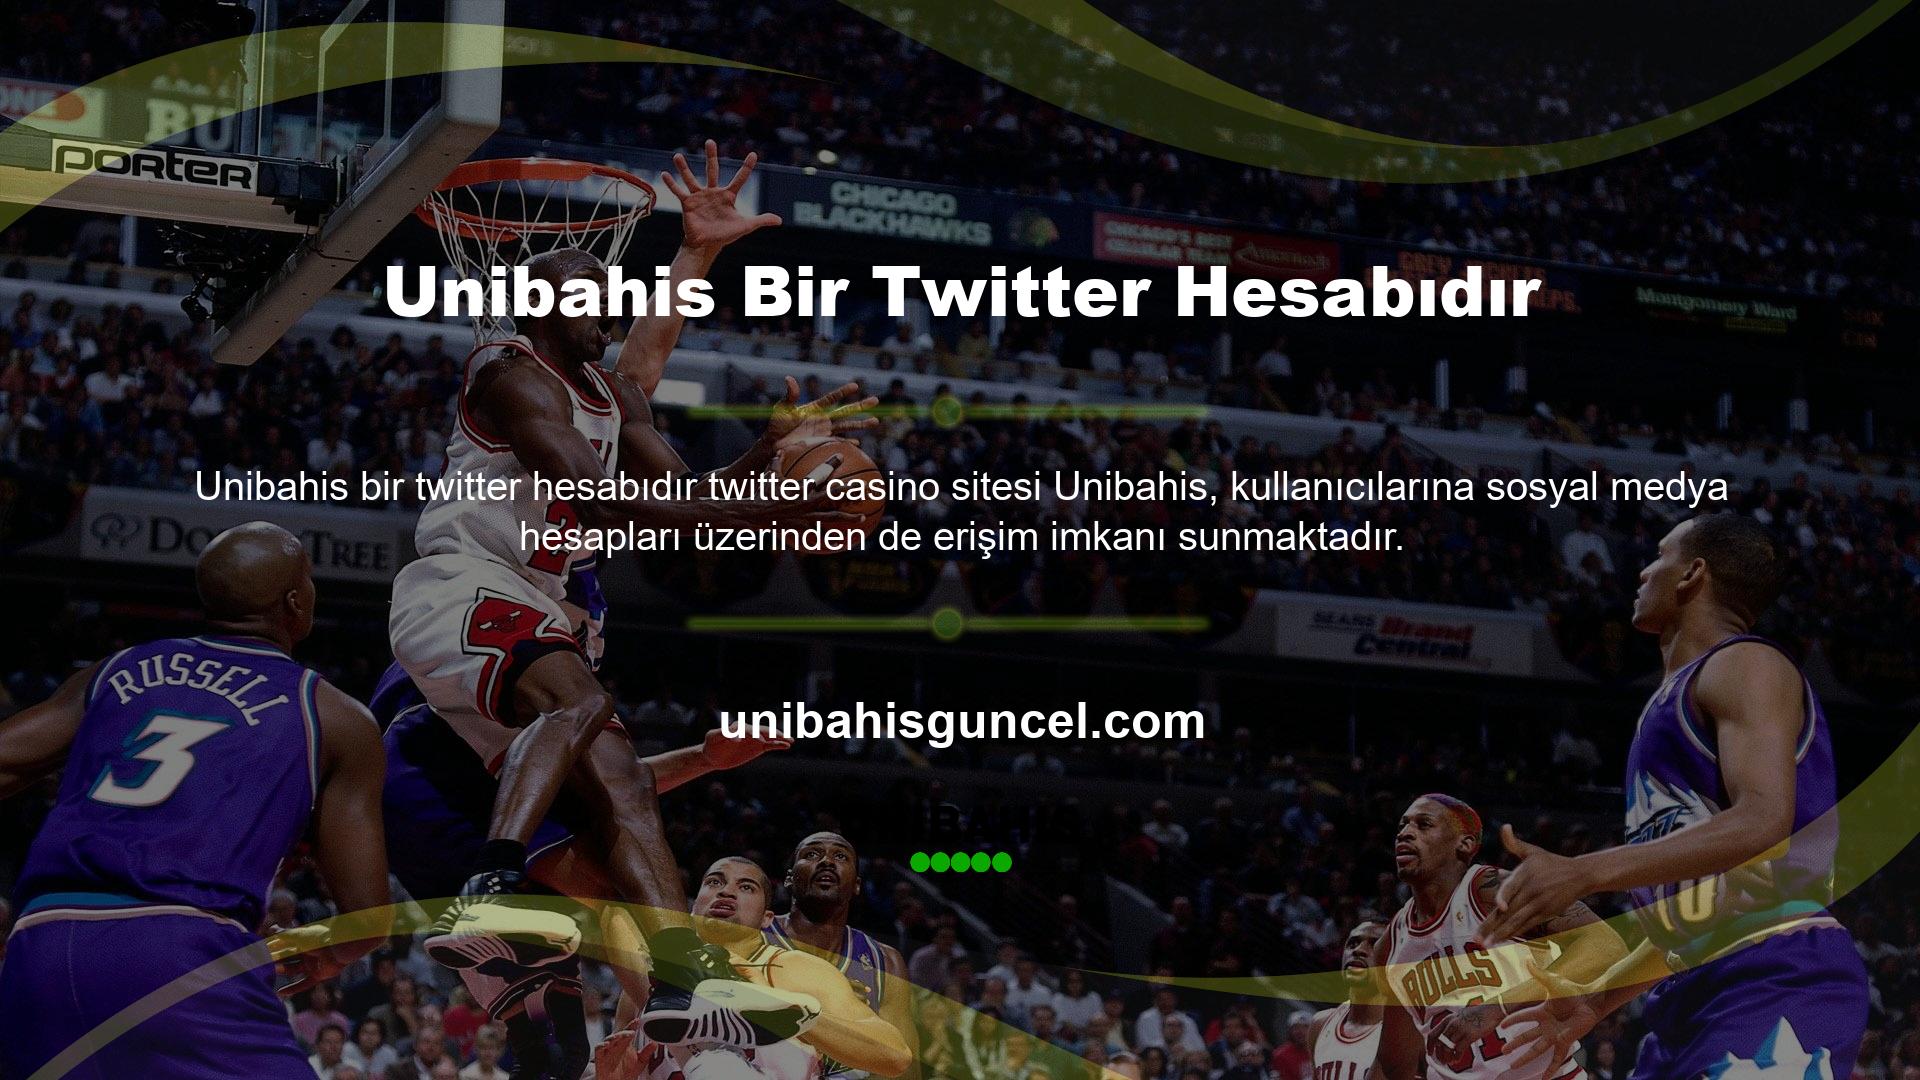 Unibahis, Twitter üzerinden çeşitli eylemlerle kullanıcılara hediye dağıtabilir